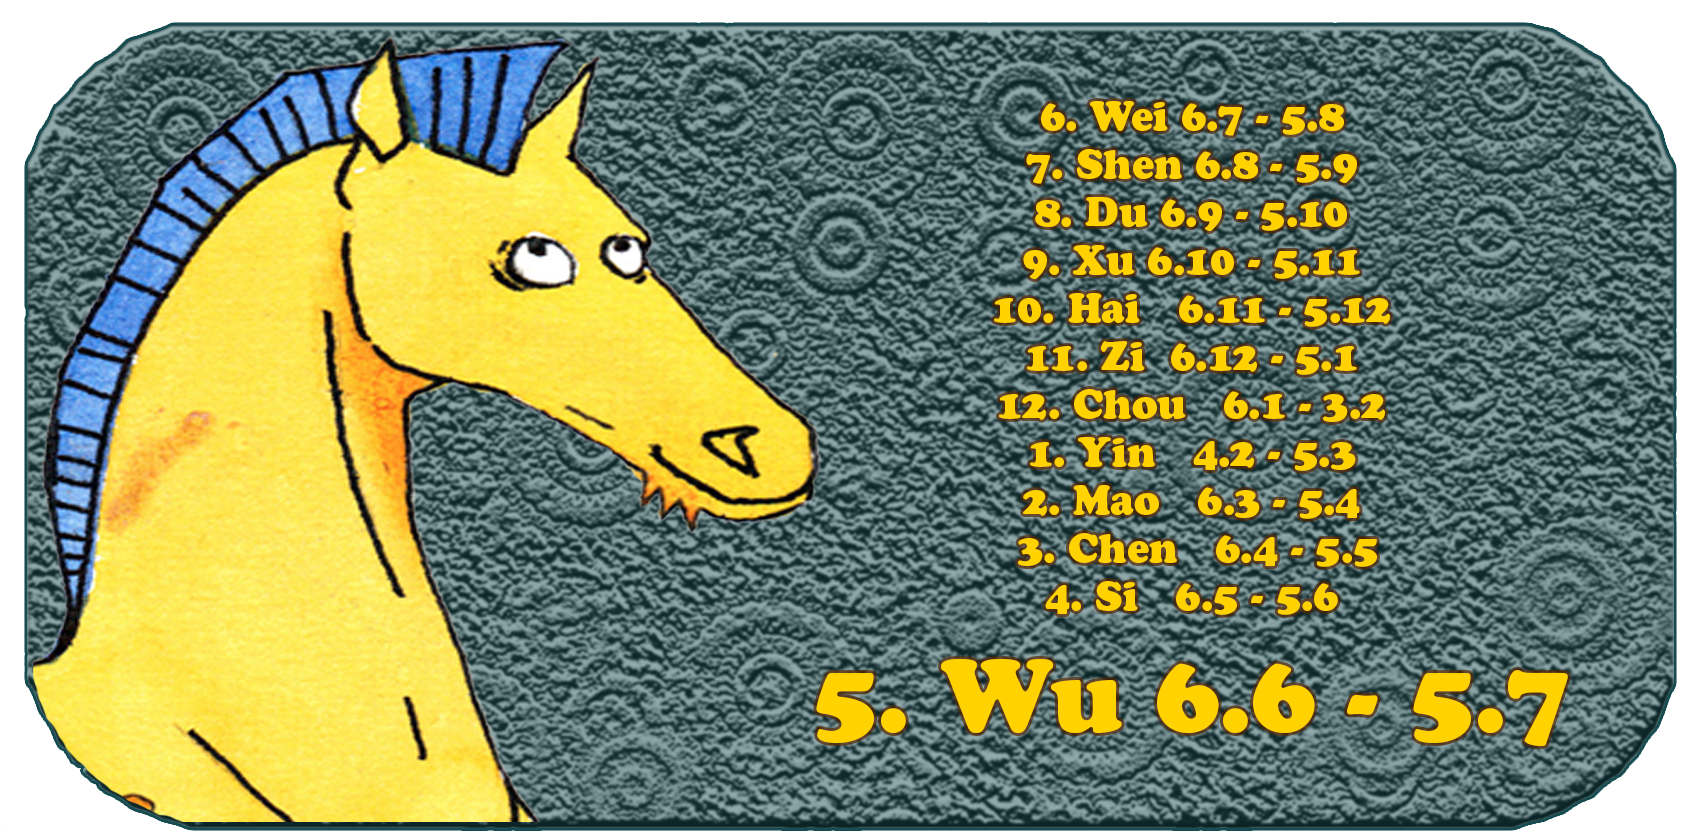 Chinesisches Tierkreiszeichen | Die zwölf chinesischen Tiere | Pferd, Juni, Monat 5, Wu